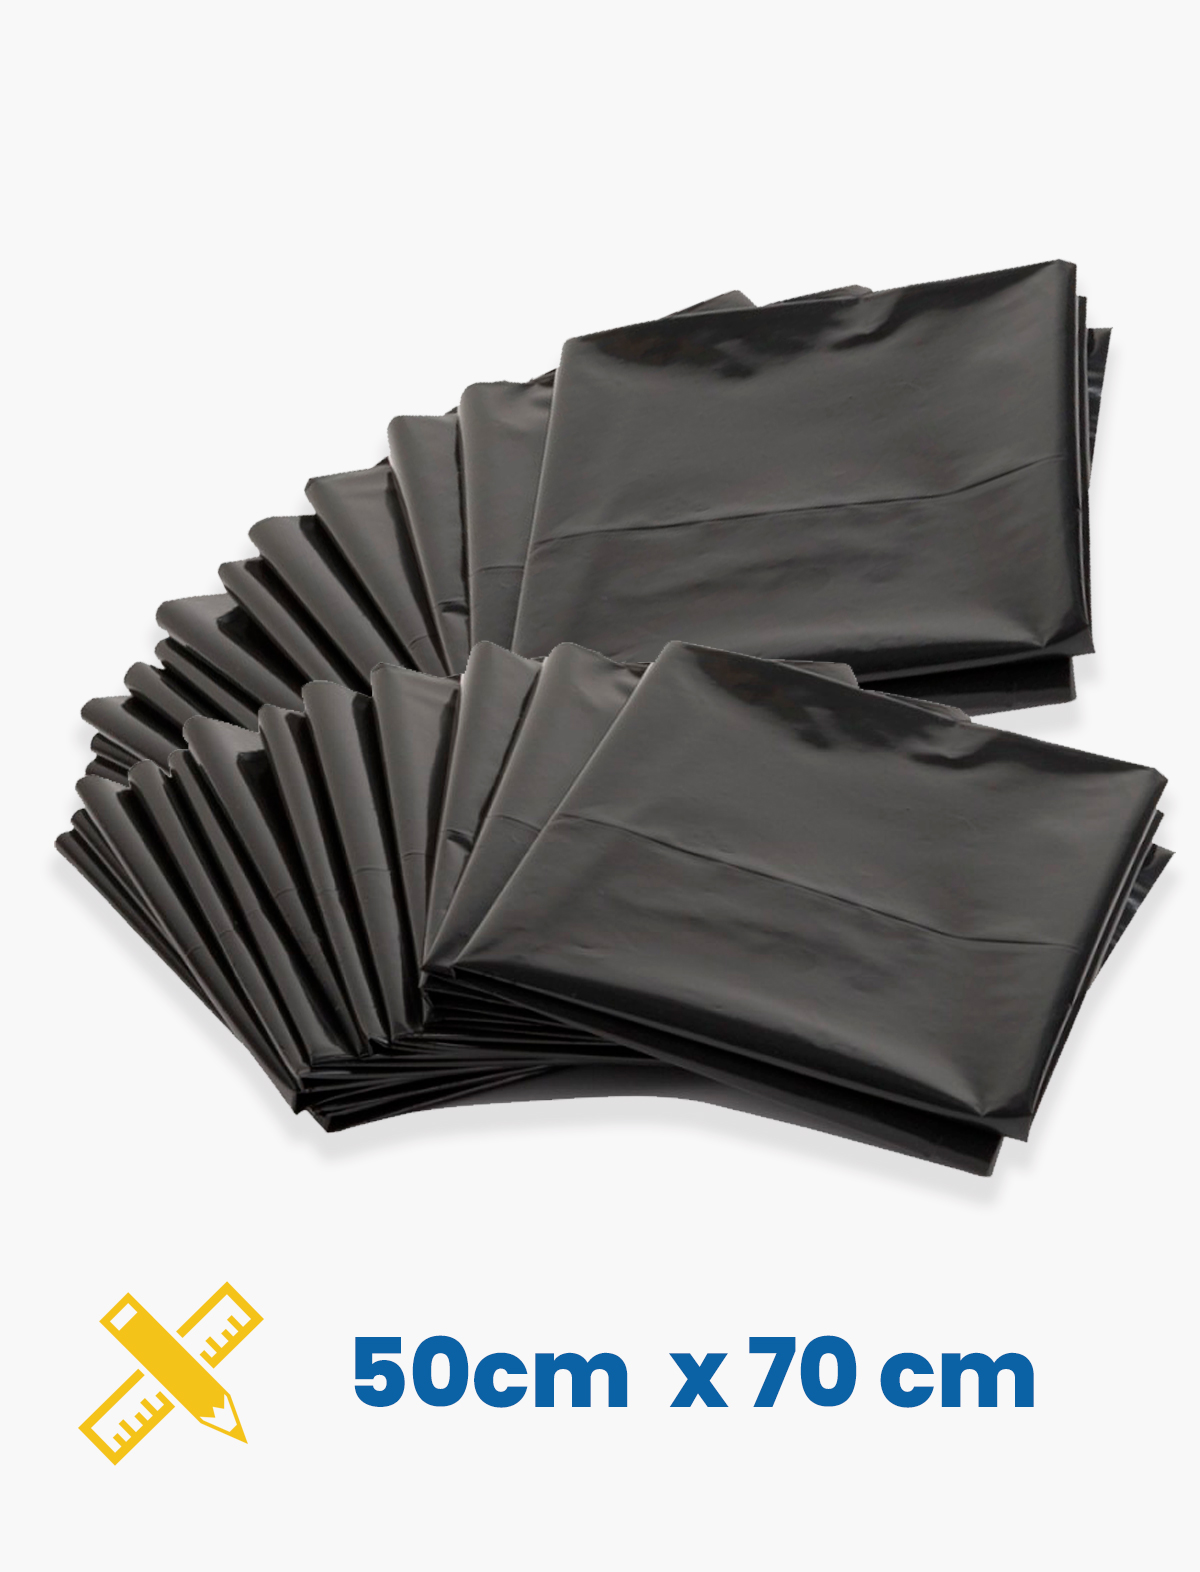 Bolsas de Plástico de diferentes tamaños Color Negra - ¡SOMOS